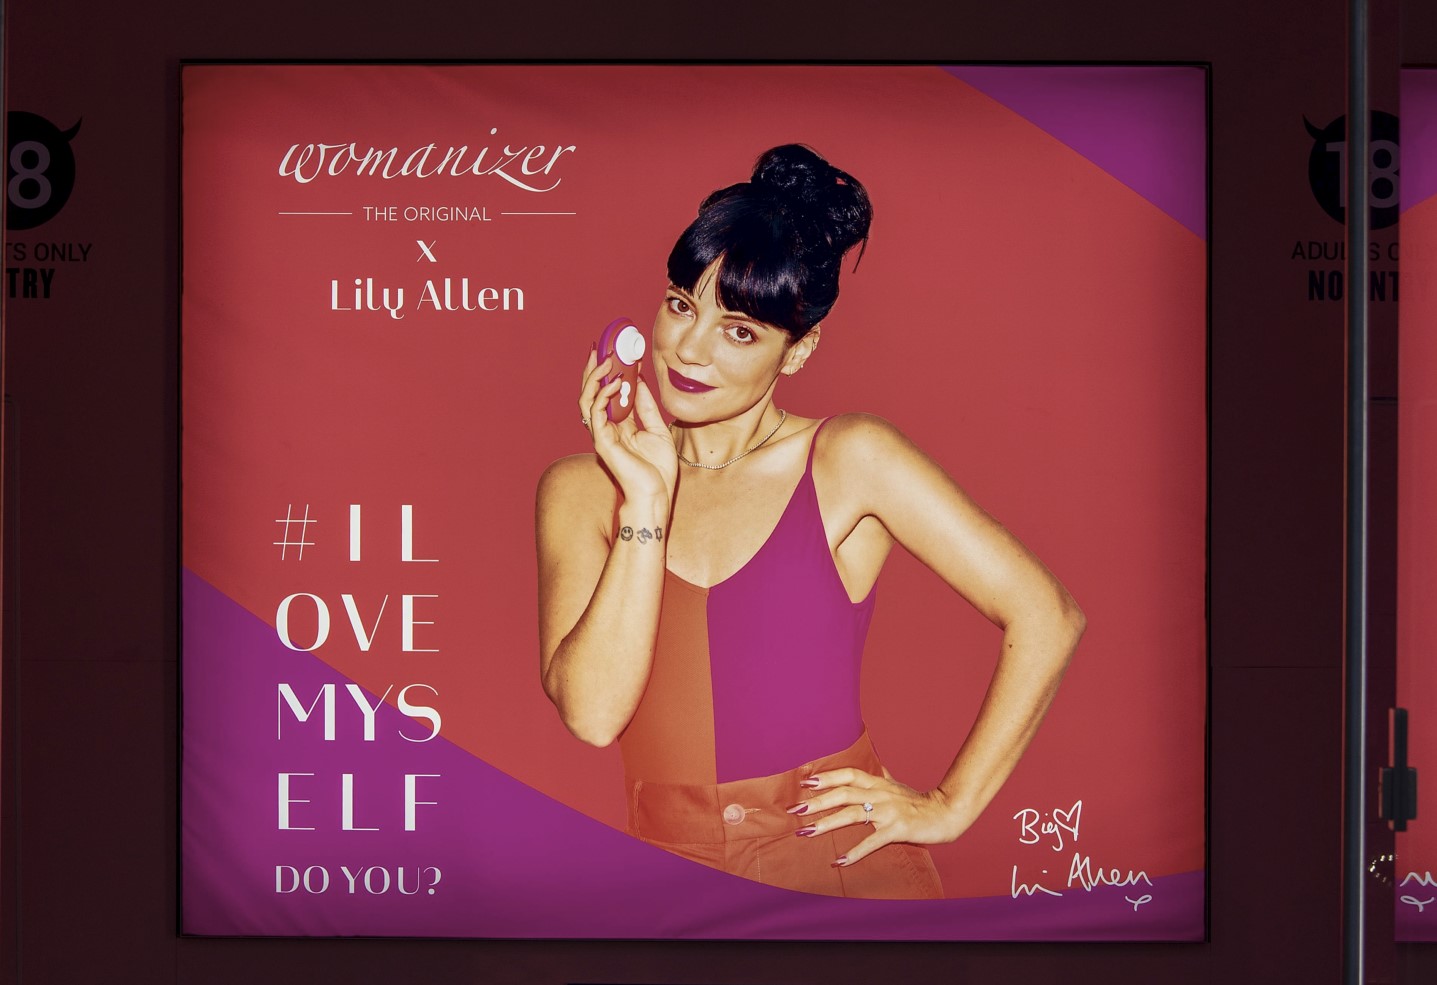 En 2020, Womanizer s’associe à la chanteuse anglaise Lily Allen pour sensibiliser à la masturbation féminine : «I love myself, do you?» – en français  «Je m’aime, et vous ?». Sipa/Sopa Images